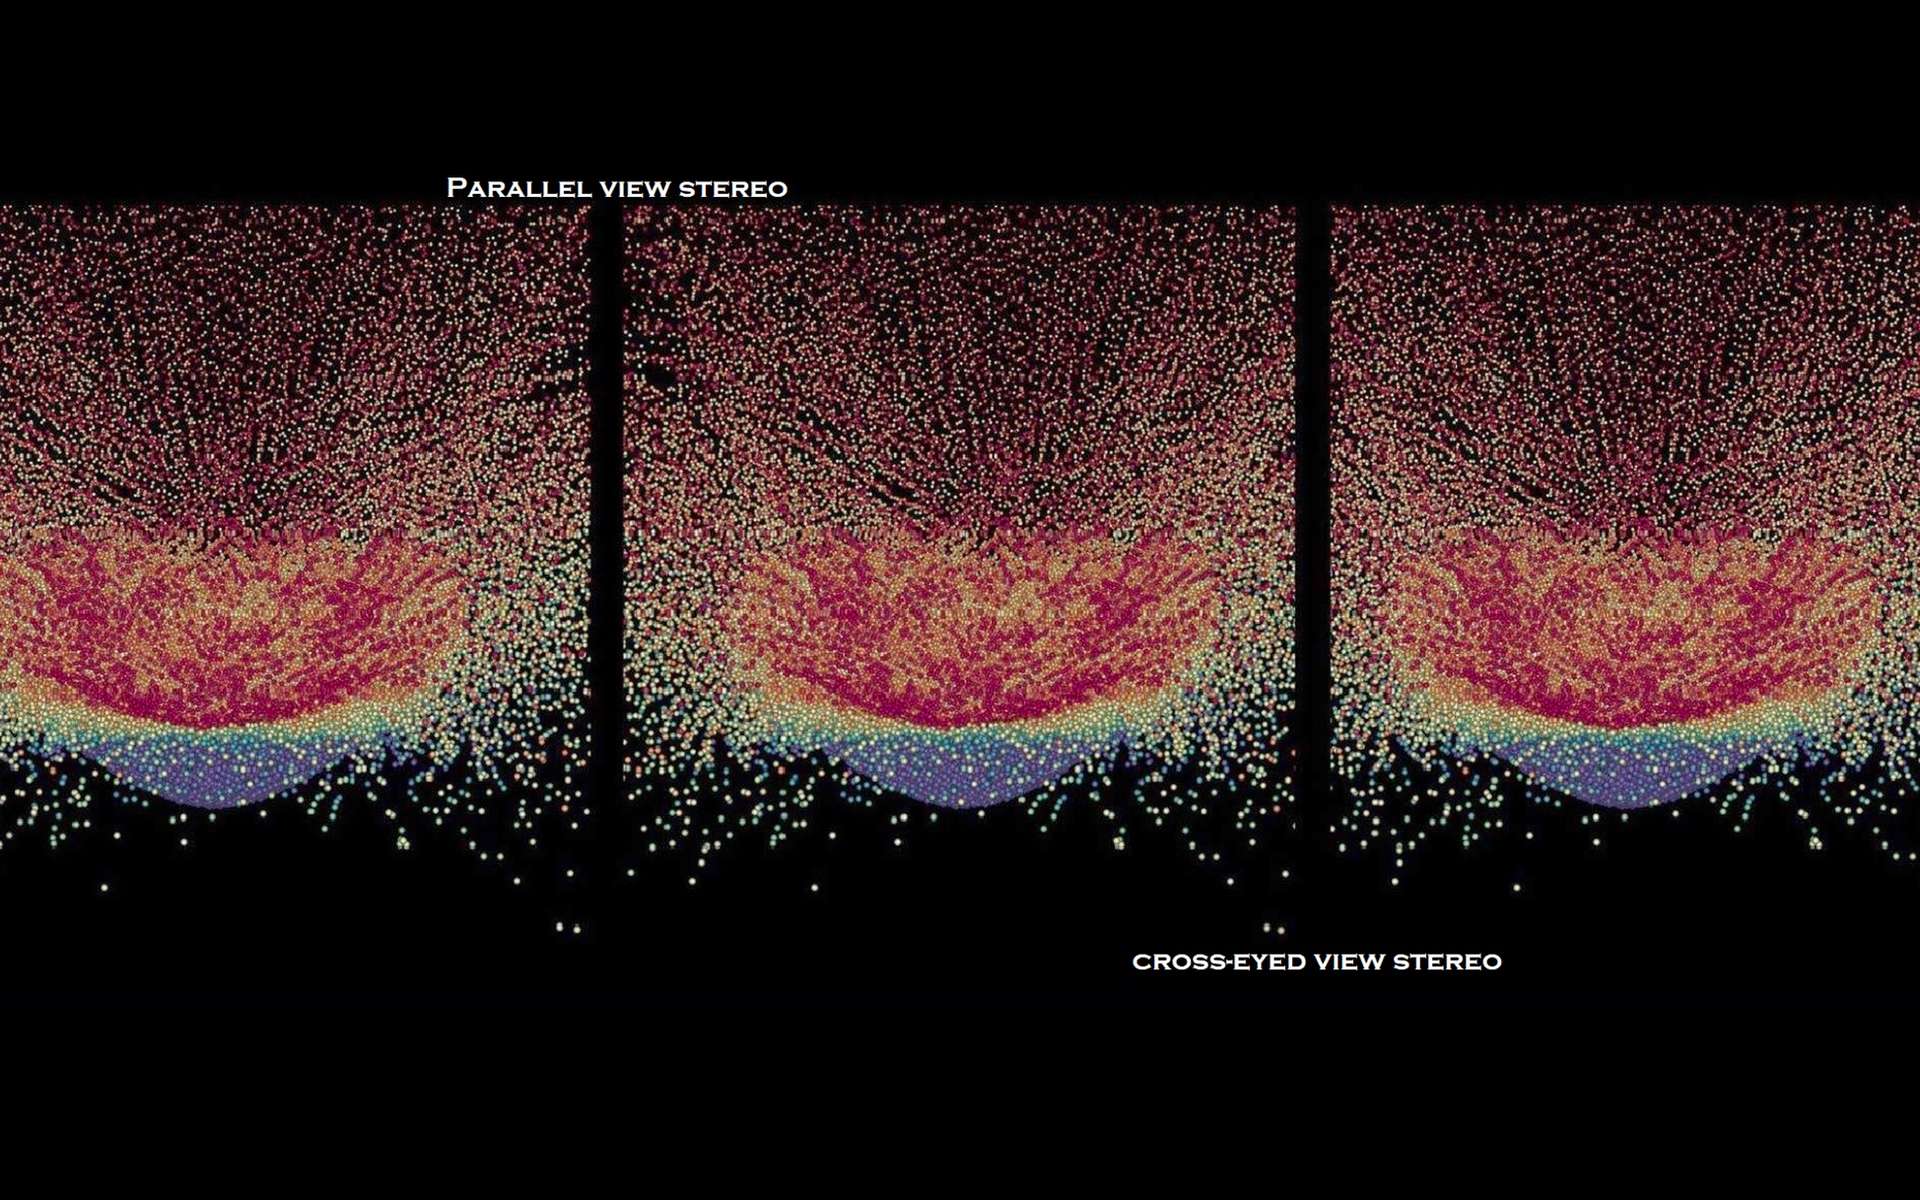 Paire stéréo par Brian May d’une simulation numérique de destruction d’un astéroïde effectuée par P. Michel et al. (2020, Nature Communication). Les couleurs représentent le niveau d’échauffement des particules dues à l’impact du rouge (plus chaud) au bleu (plus froid). Les deux images de gauche peuvent être vues en 3D en vision parallèle (en regardant à l’infini au milieu des deux images). Les deux images de droites peuvent être vues en 3D en regard croisé. © P. Michel, B. May et al. – 2020, Nature Communication